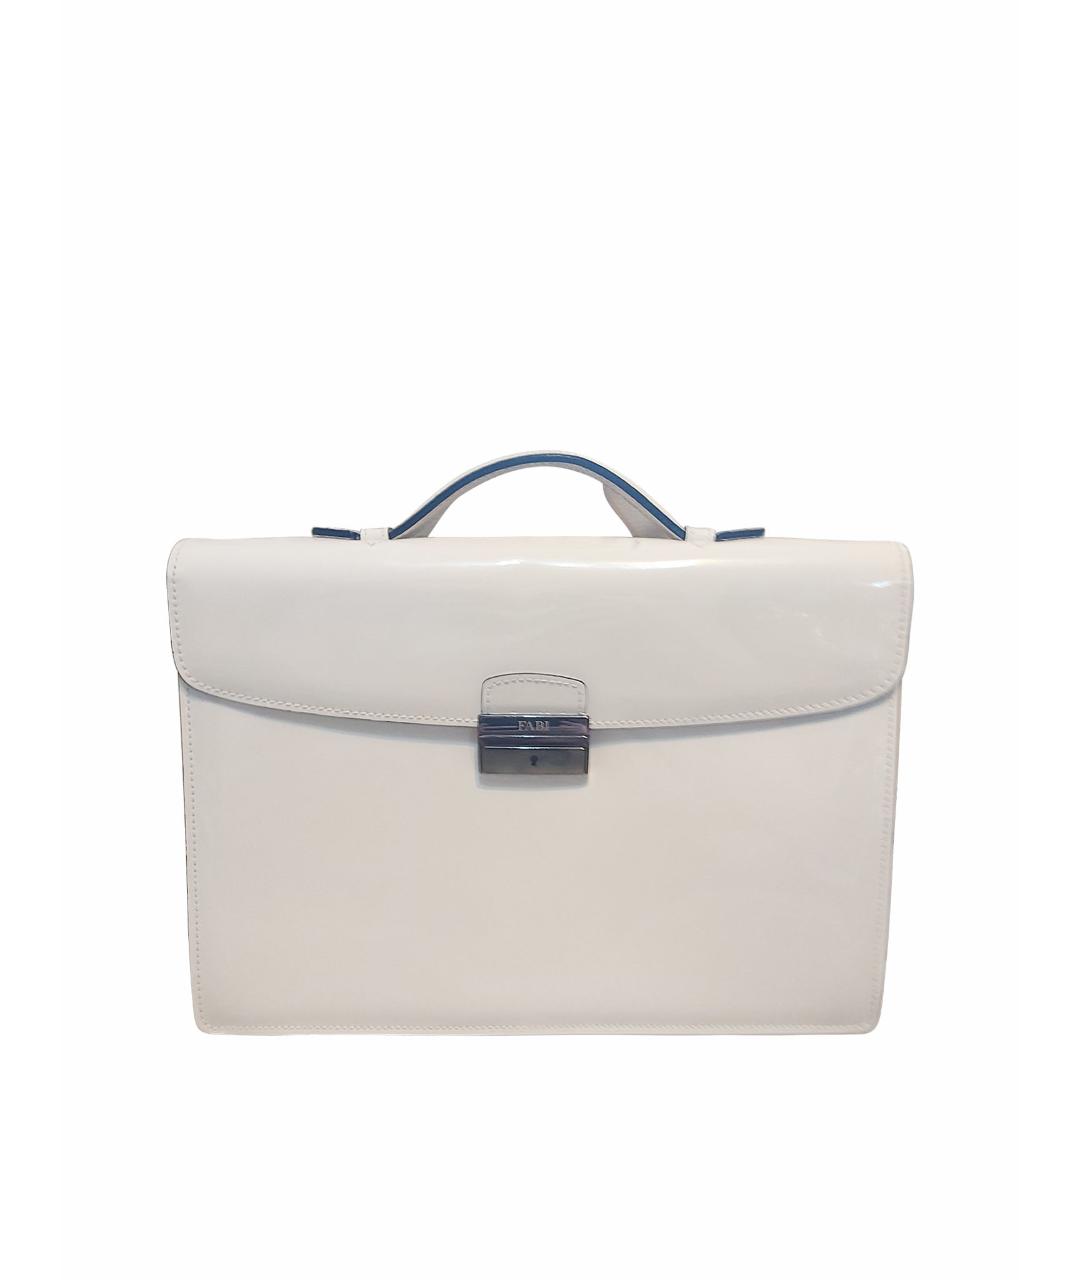 FABI Белый кожаный портфель, фото 1